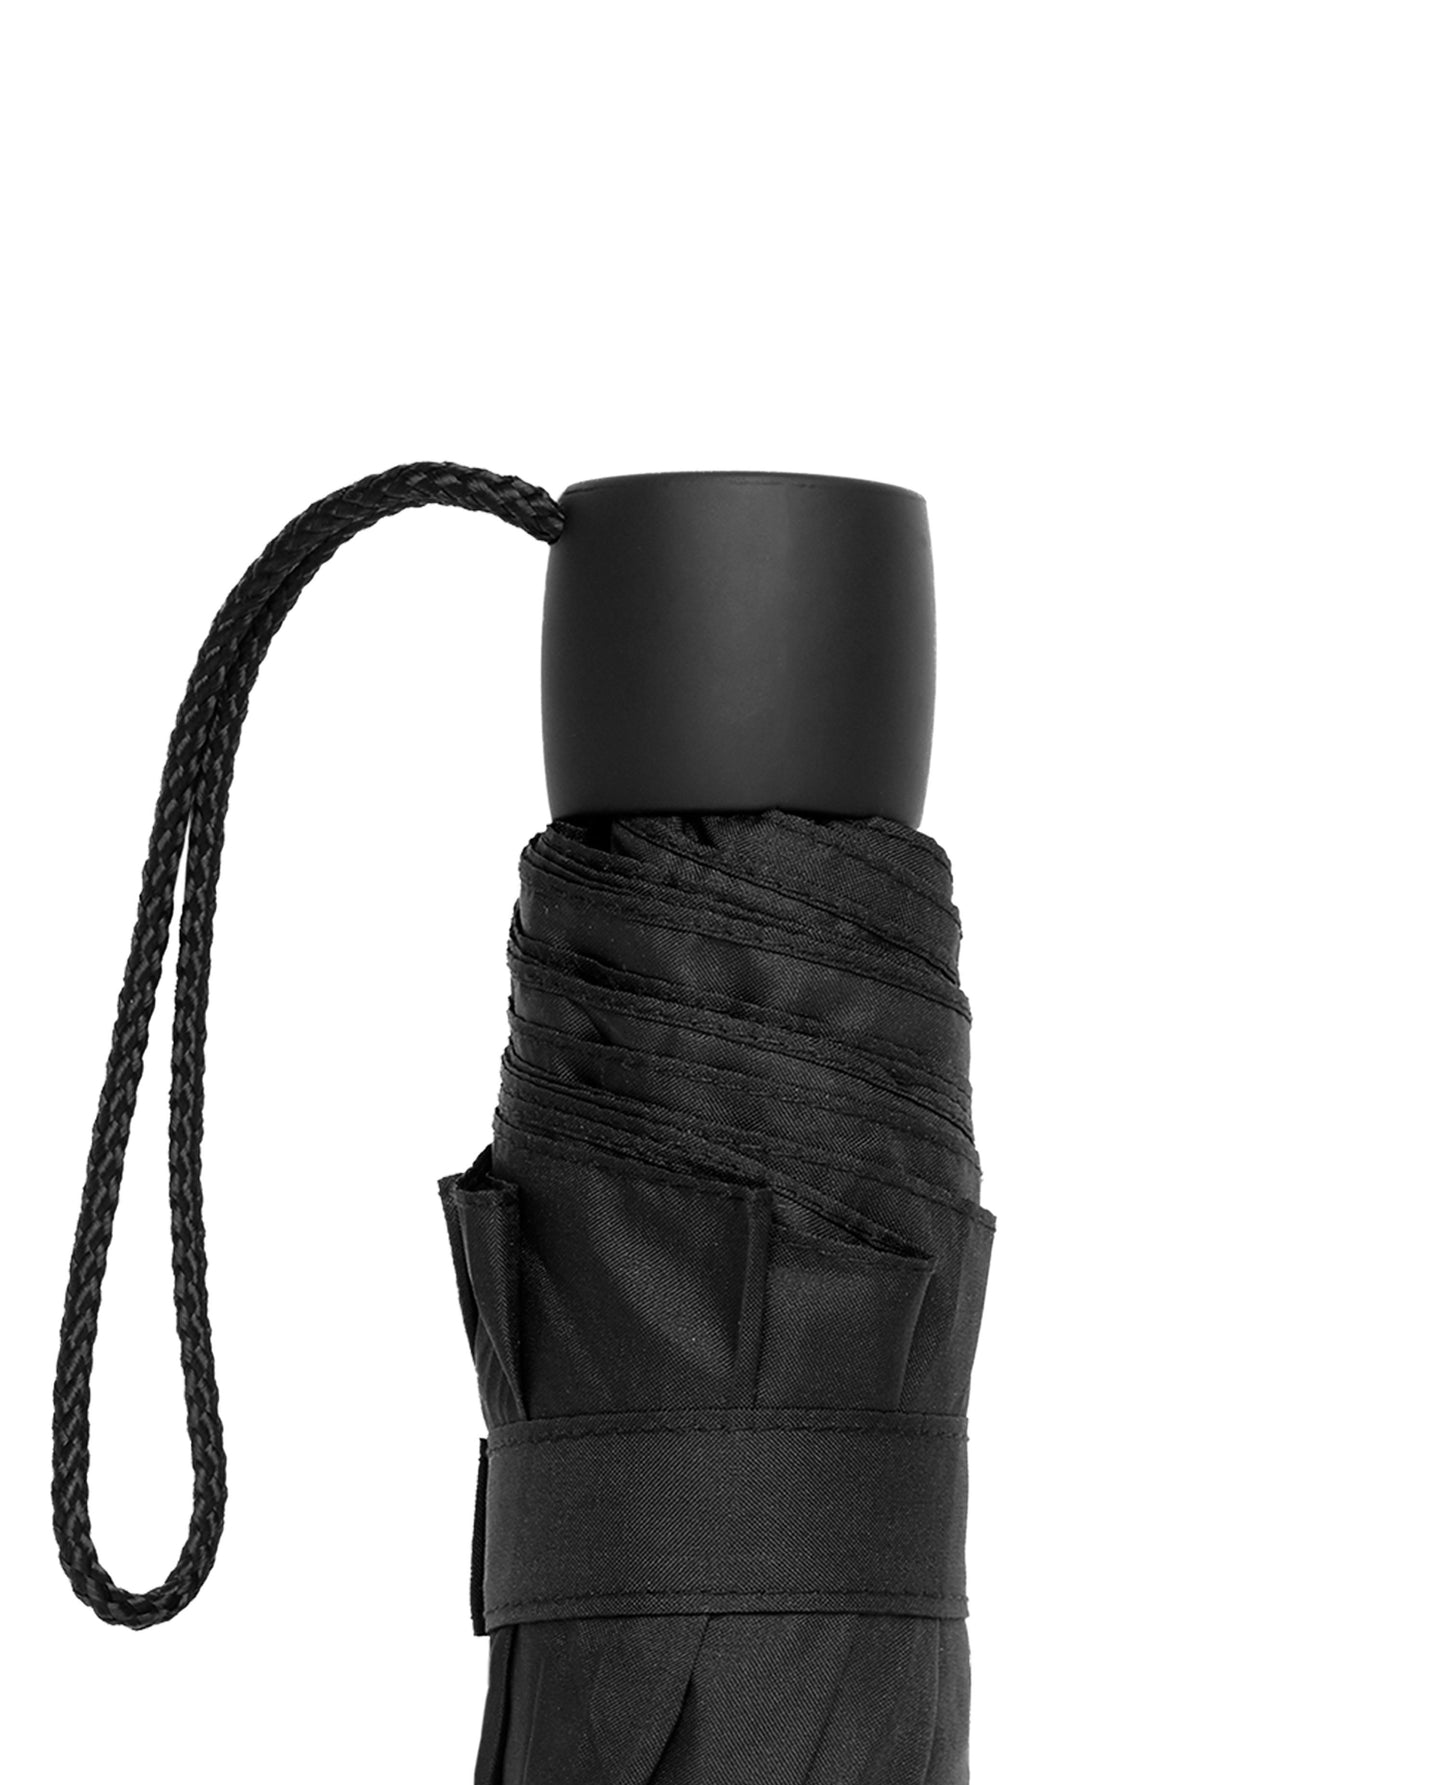 Image 2 of Black Minilite Compact Umbrella